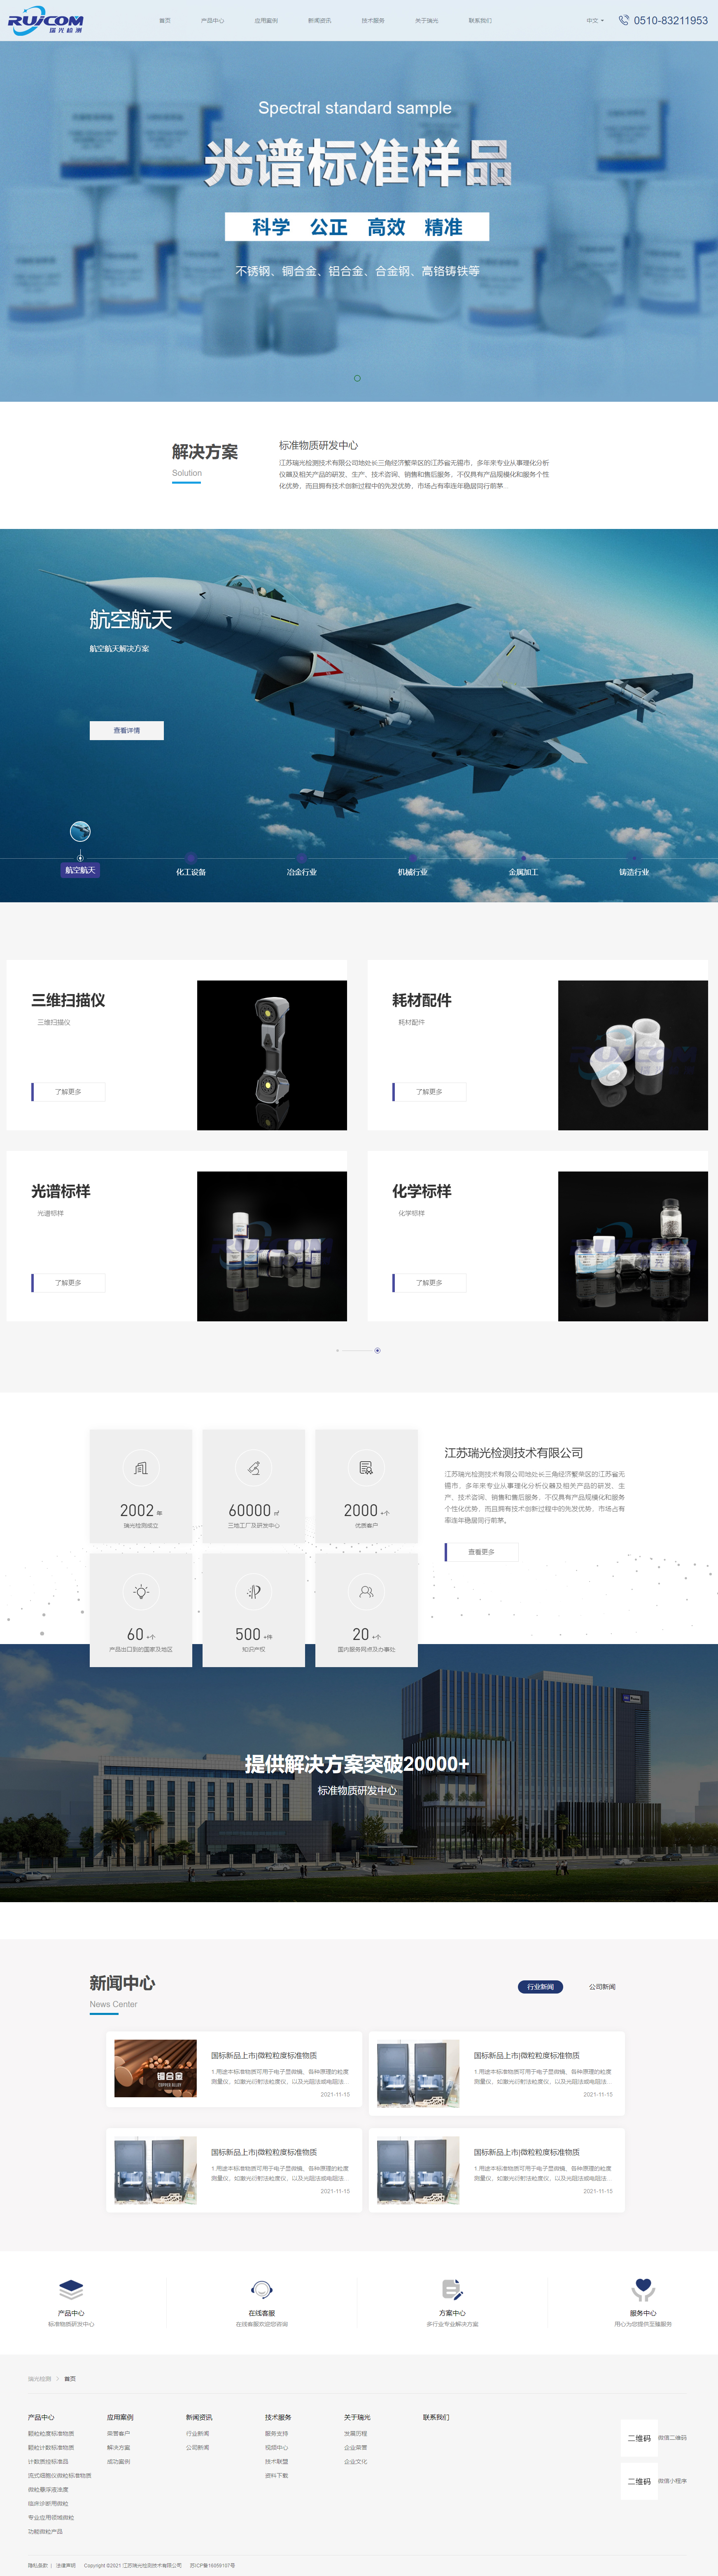 華世通水控器品牌自適應網站 PC端預覽圖